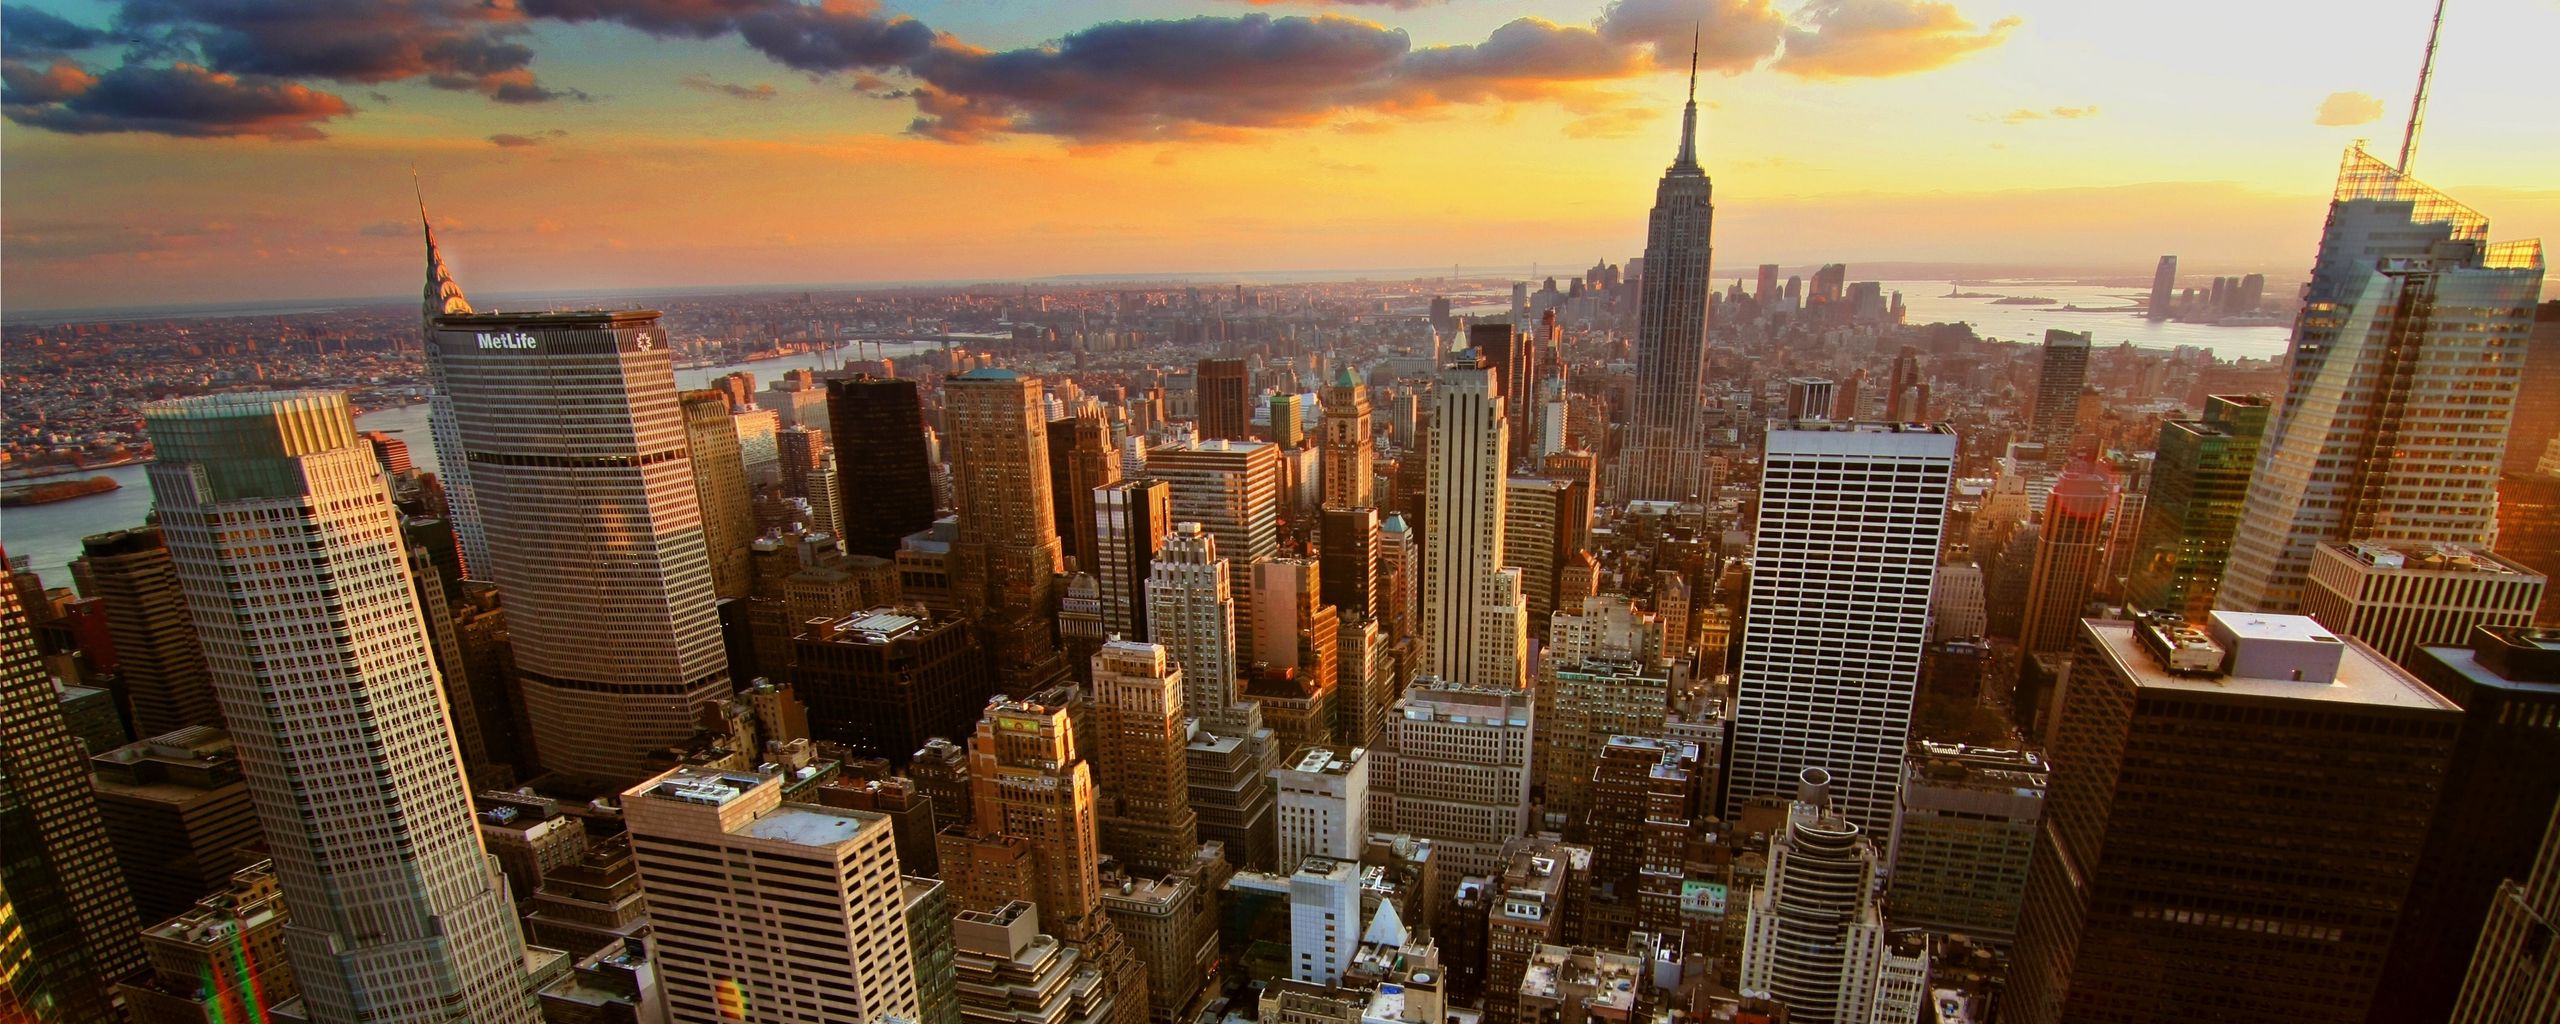 Hình nền máy tính New York sẽ khiến bạn một lần nữa ngưỡng mộ vẻ đẹp tuyệt vời của thành phố lớn nhất thế giới. Hãy tải xuống hình nền với chất lượng cao và tận hưởng không gian tràn đầy năng lượng của thành phố đầy sức mạnh này.